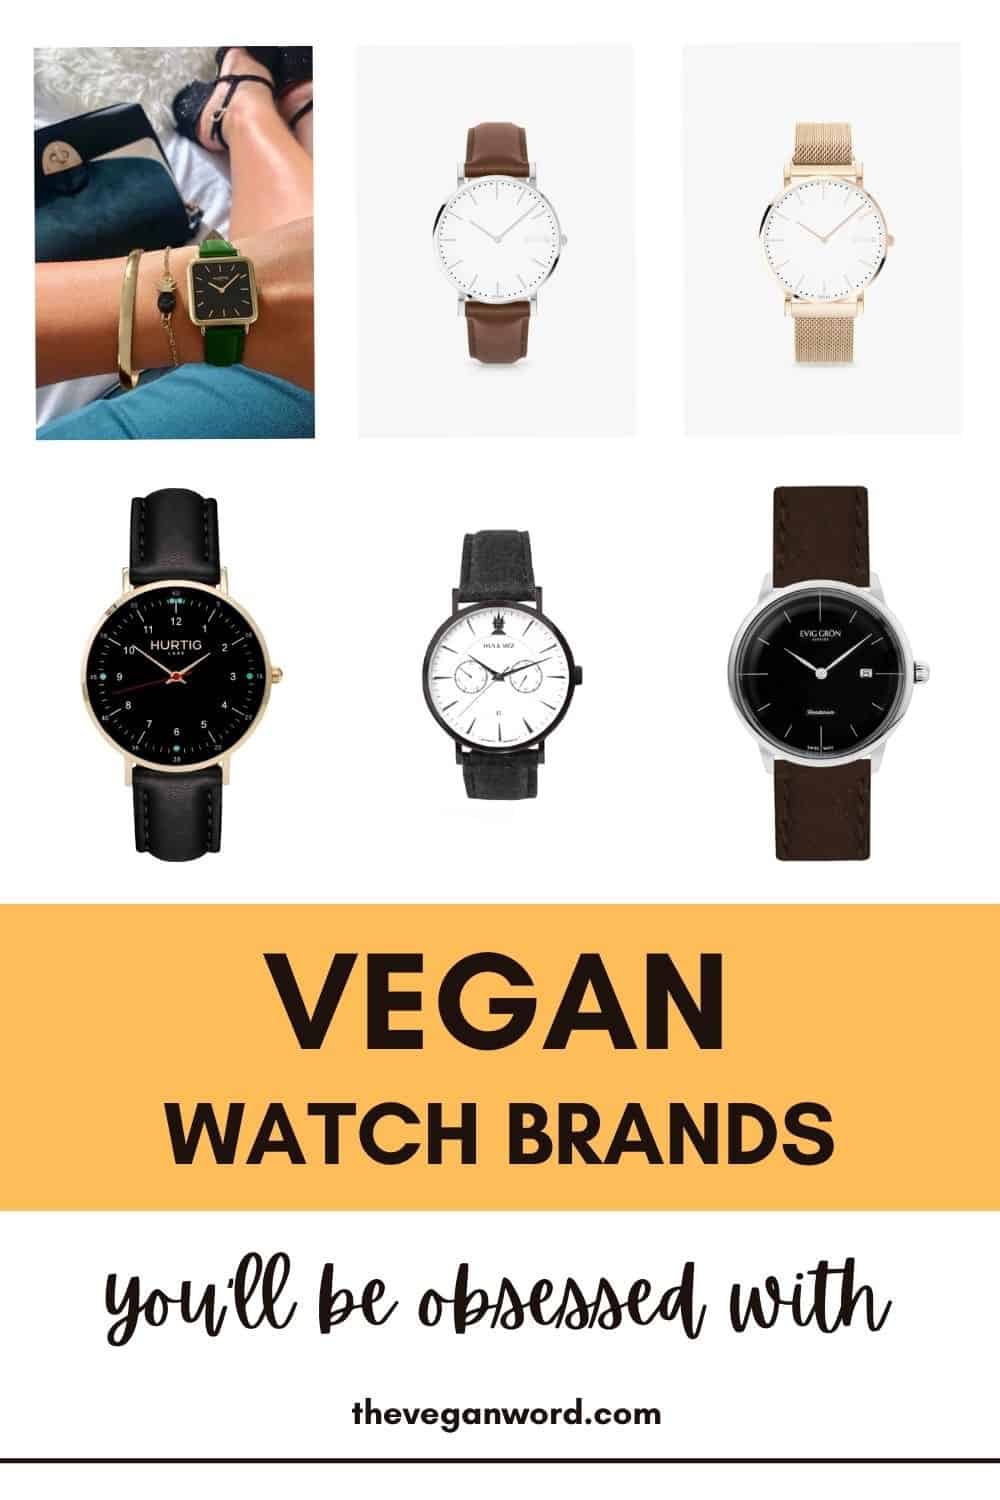 Pinterest image showing vegan watches